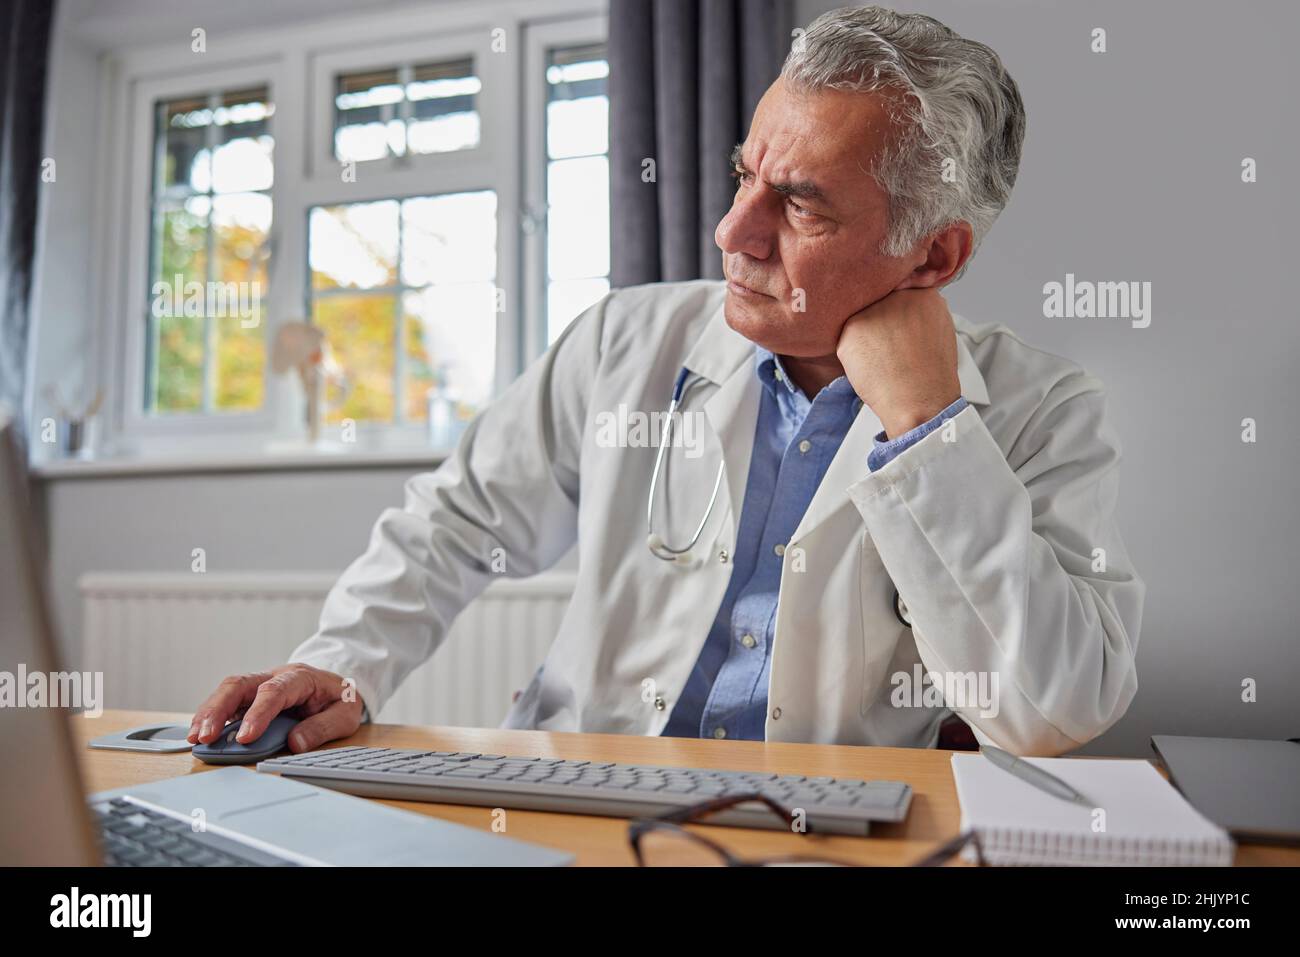 Estresado y trabajado en exceso Doctor en White Coat en el escritorio de la oficina Foto de stock